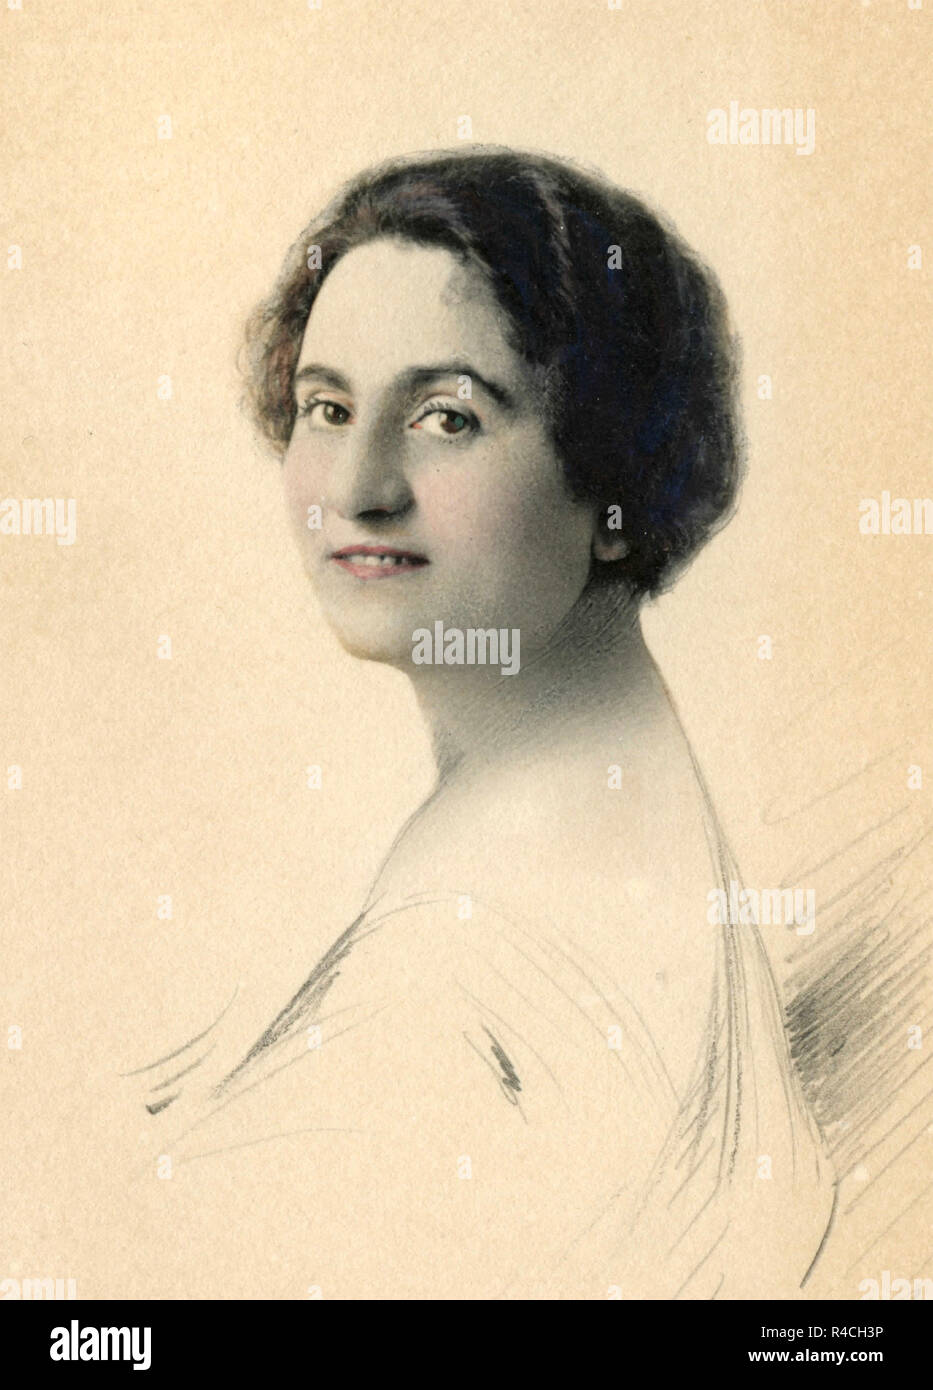 Colorati a mano il vecchio ritratto di una donna, 1910s Foto Stock